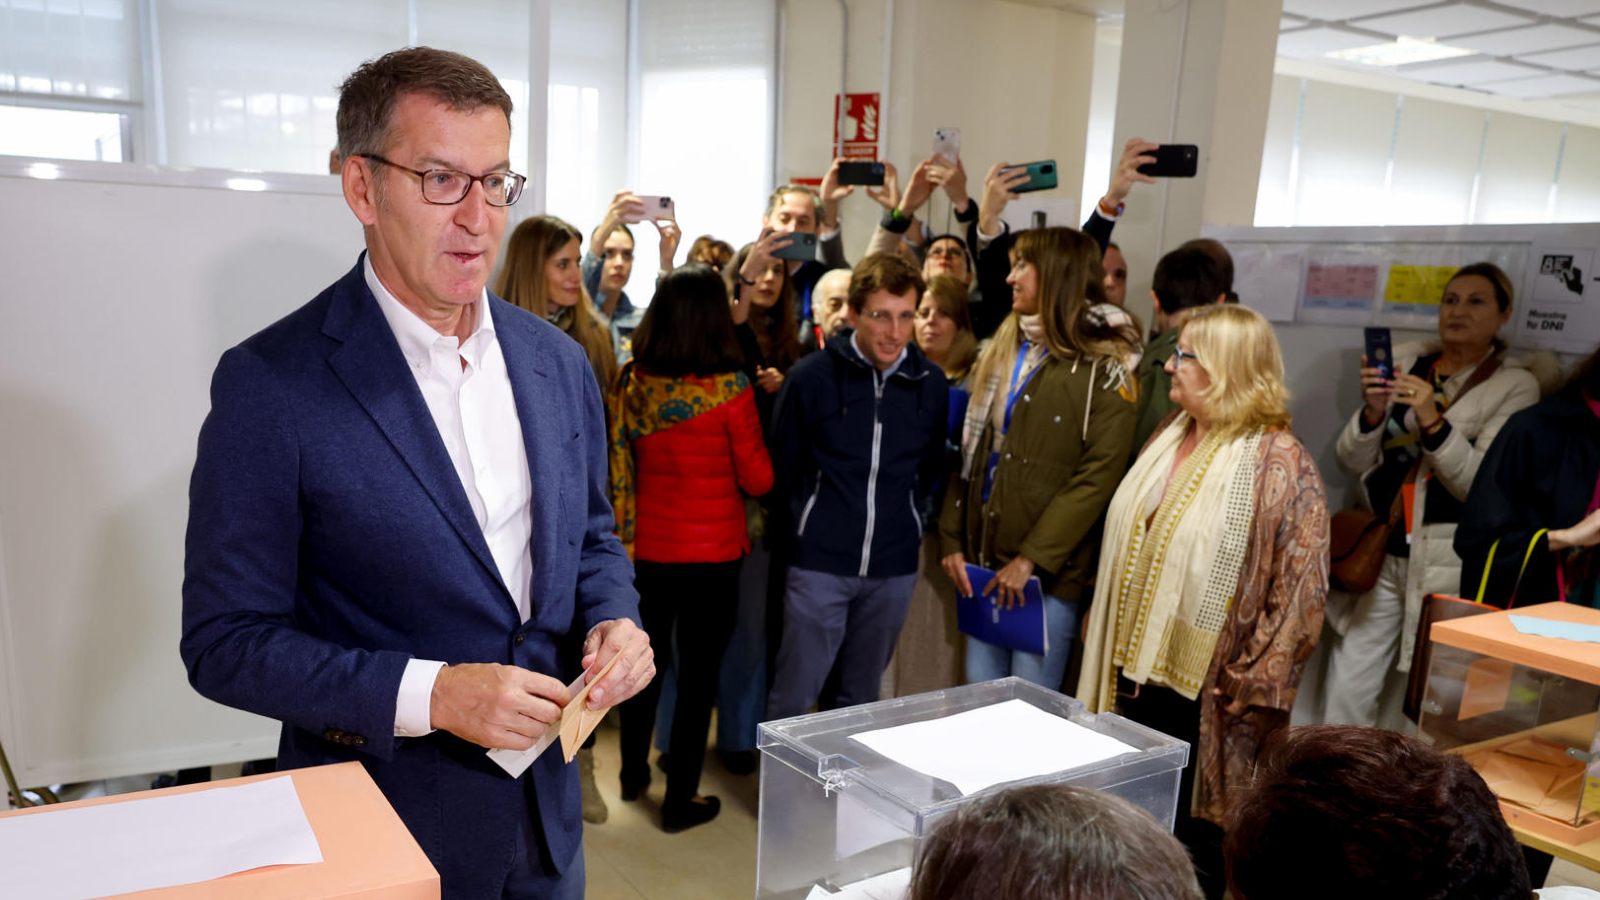 El presidente del Partido Popular, Alberto Núñez Feijóo vota en el colegio electoral del Ramiro de Maeztu en Madrid este domingo durante las elecciones municipales y autonómicas. EFE/Ballesteros